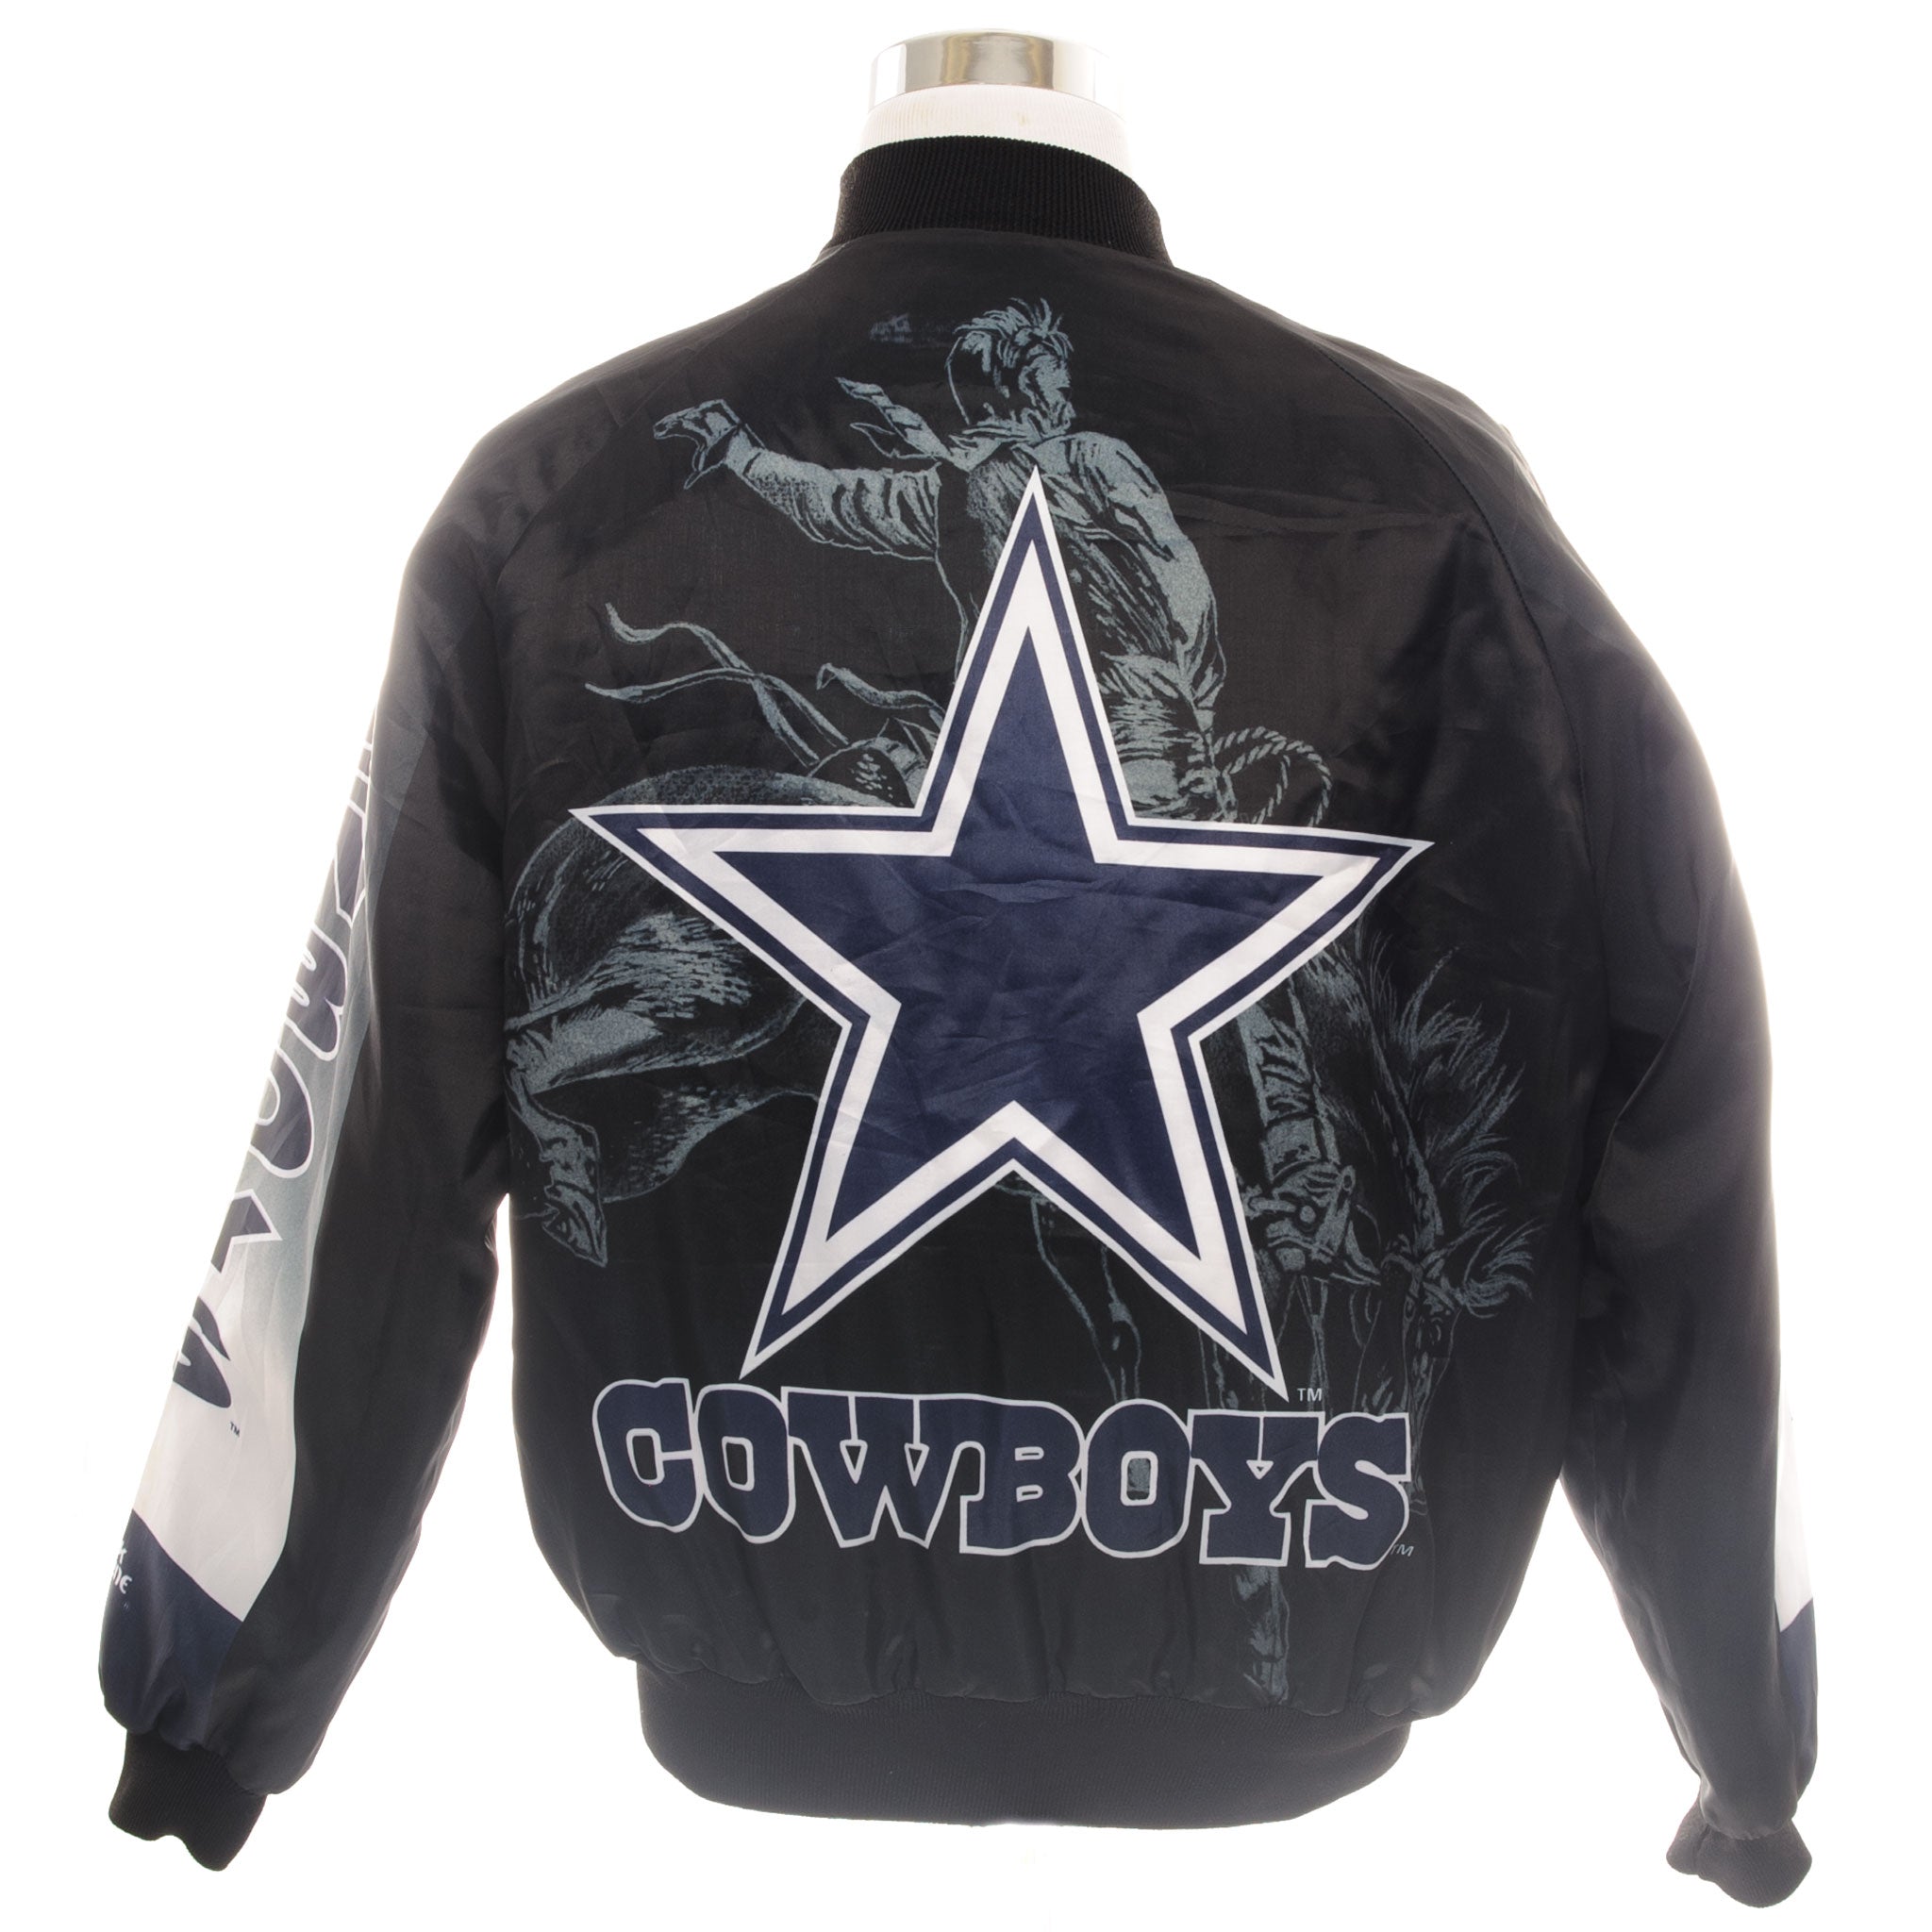 90s dallas cowboys jacket